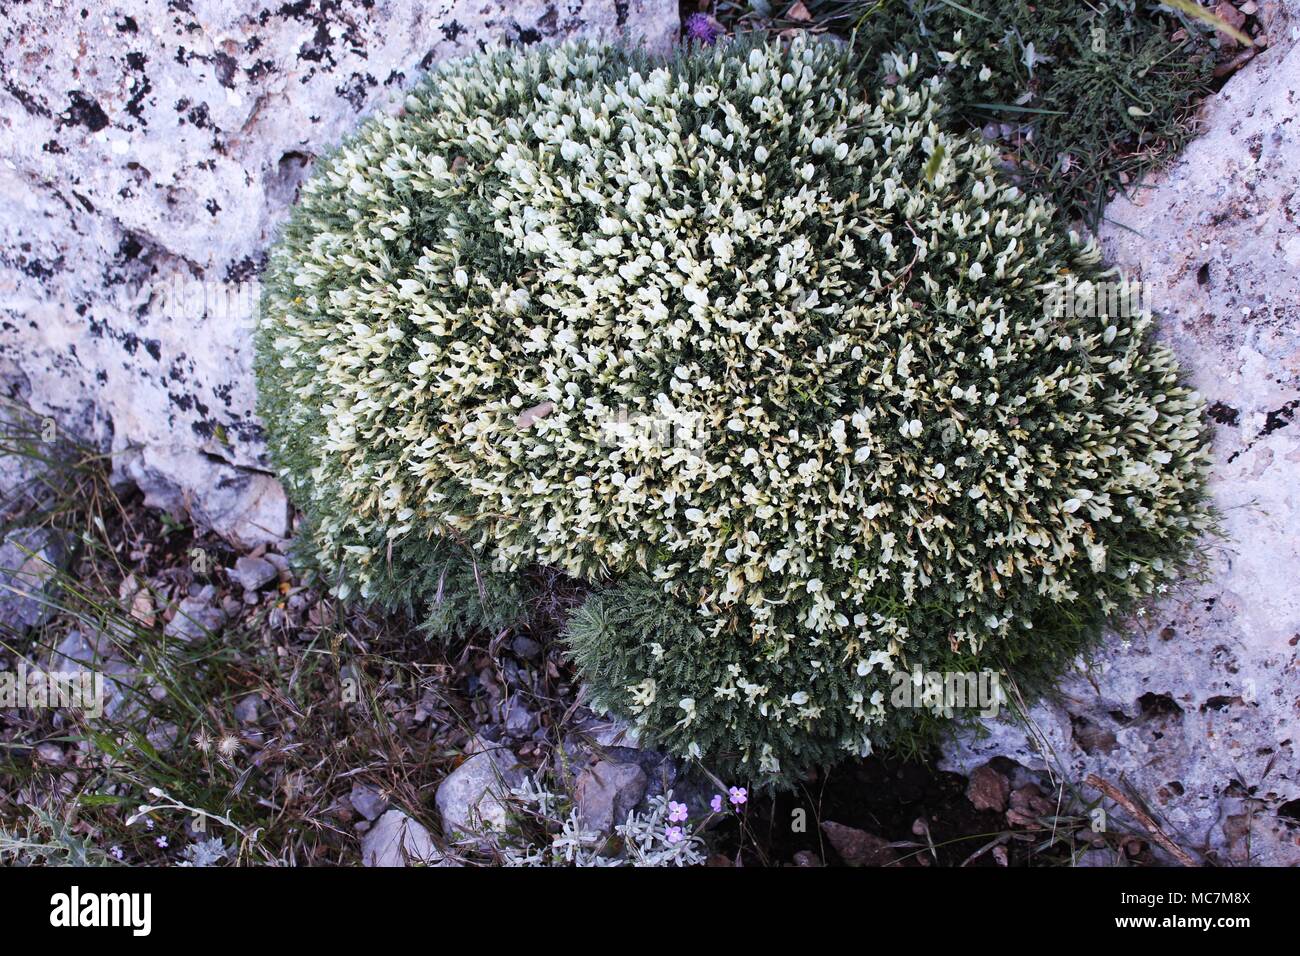 Turfs of Astragalus angustifolius Stock Photo